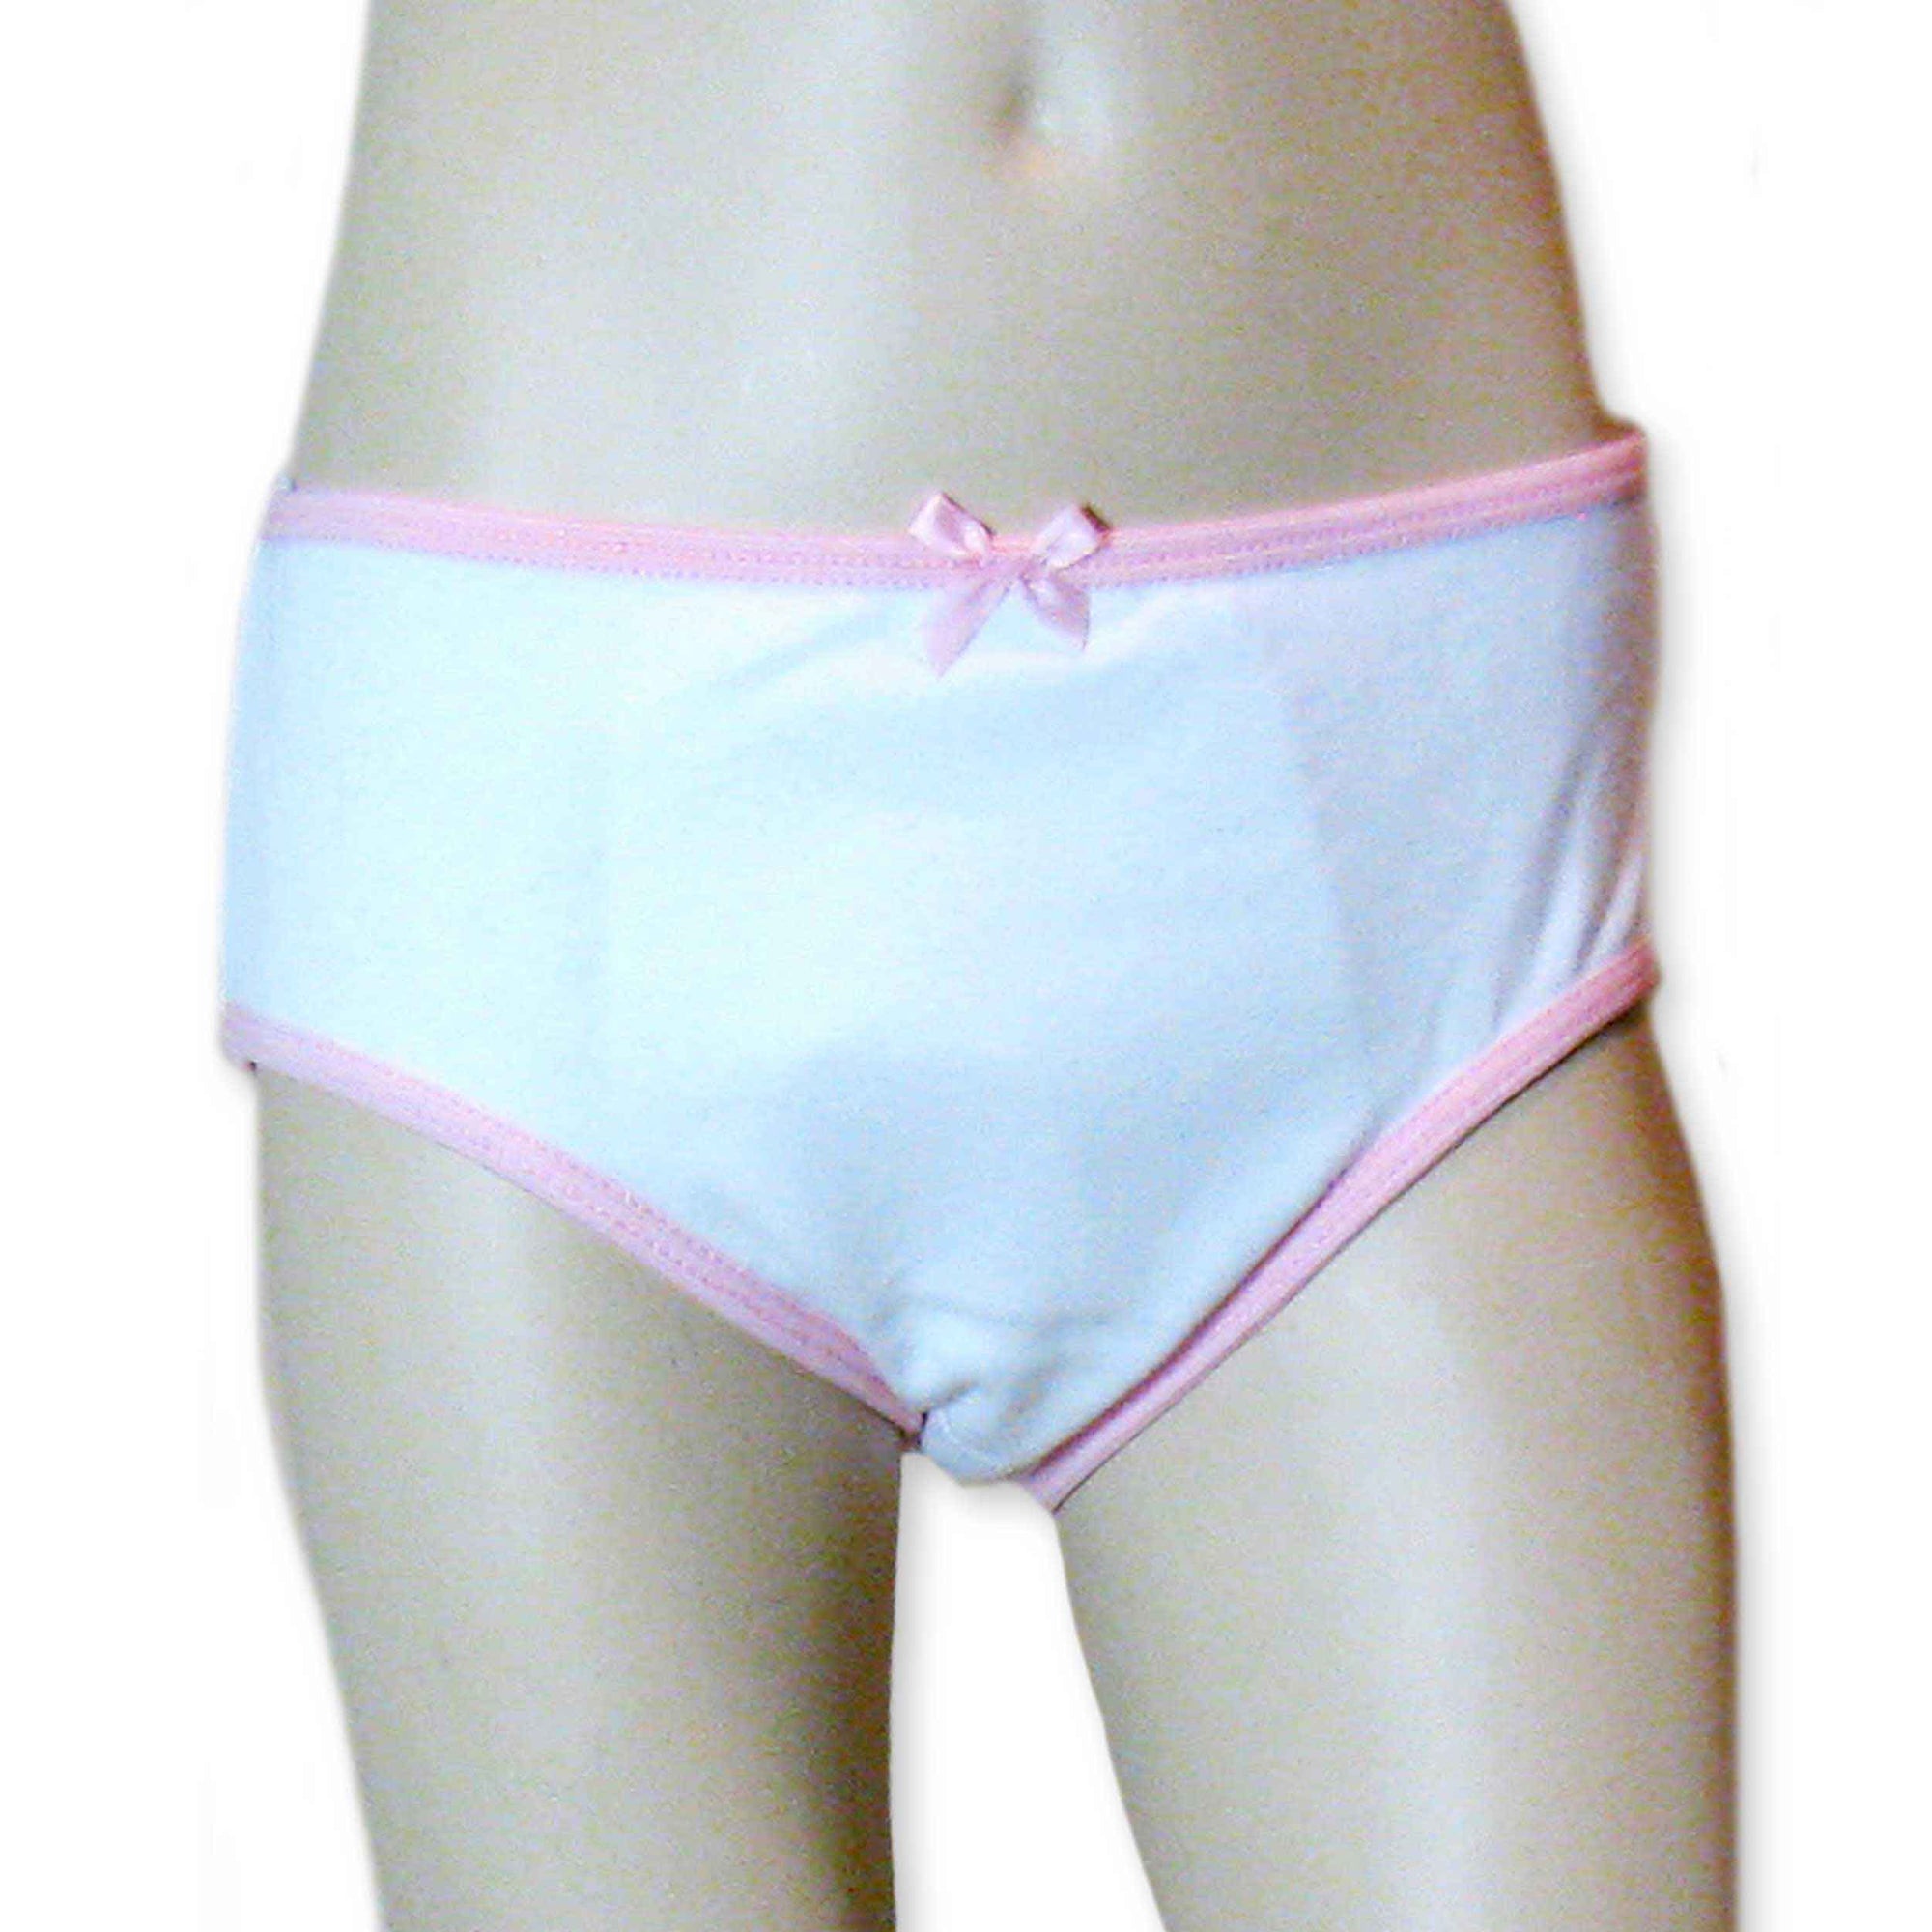 Absorbent Thong Panties for Bladder Leaks